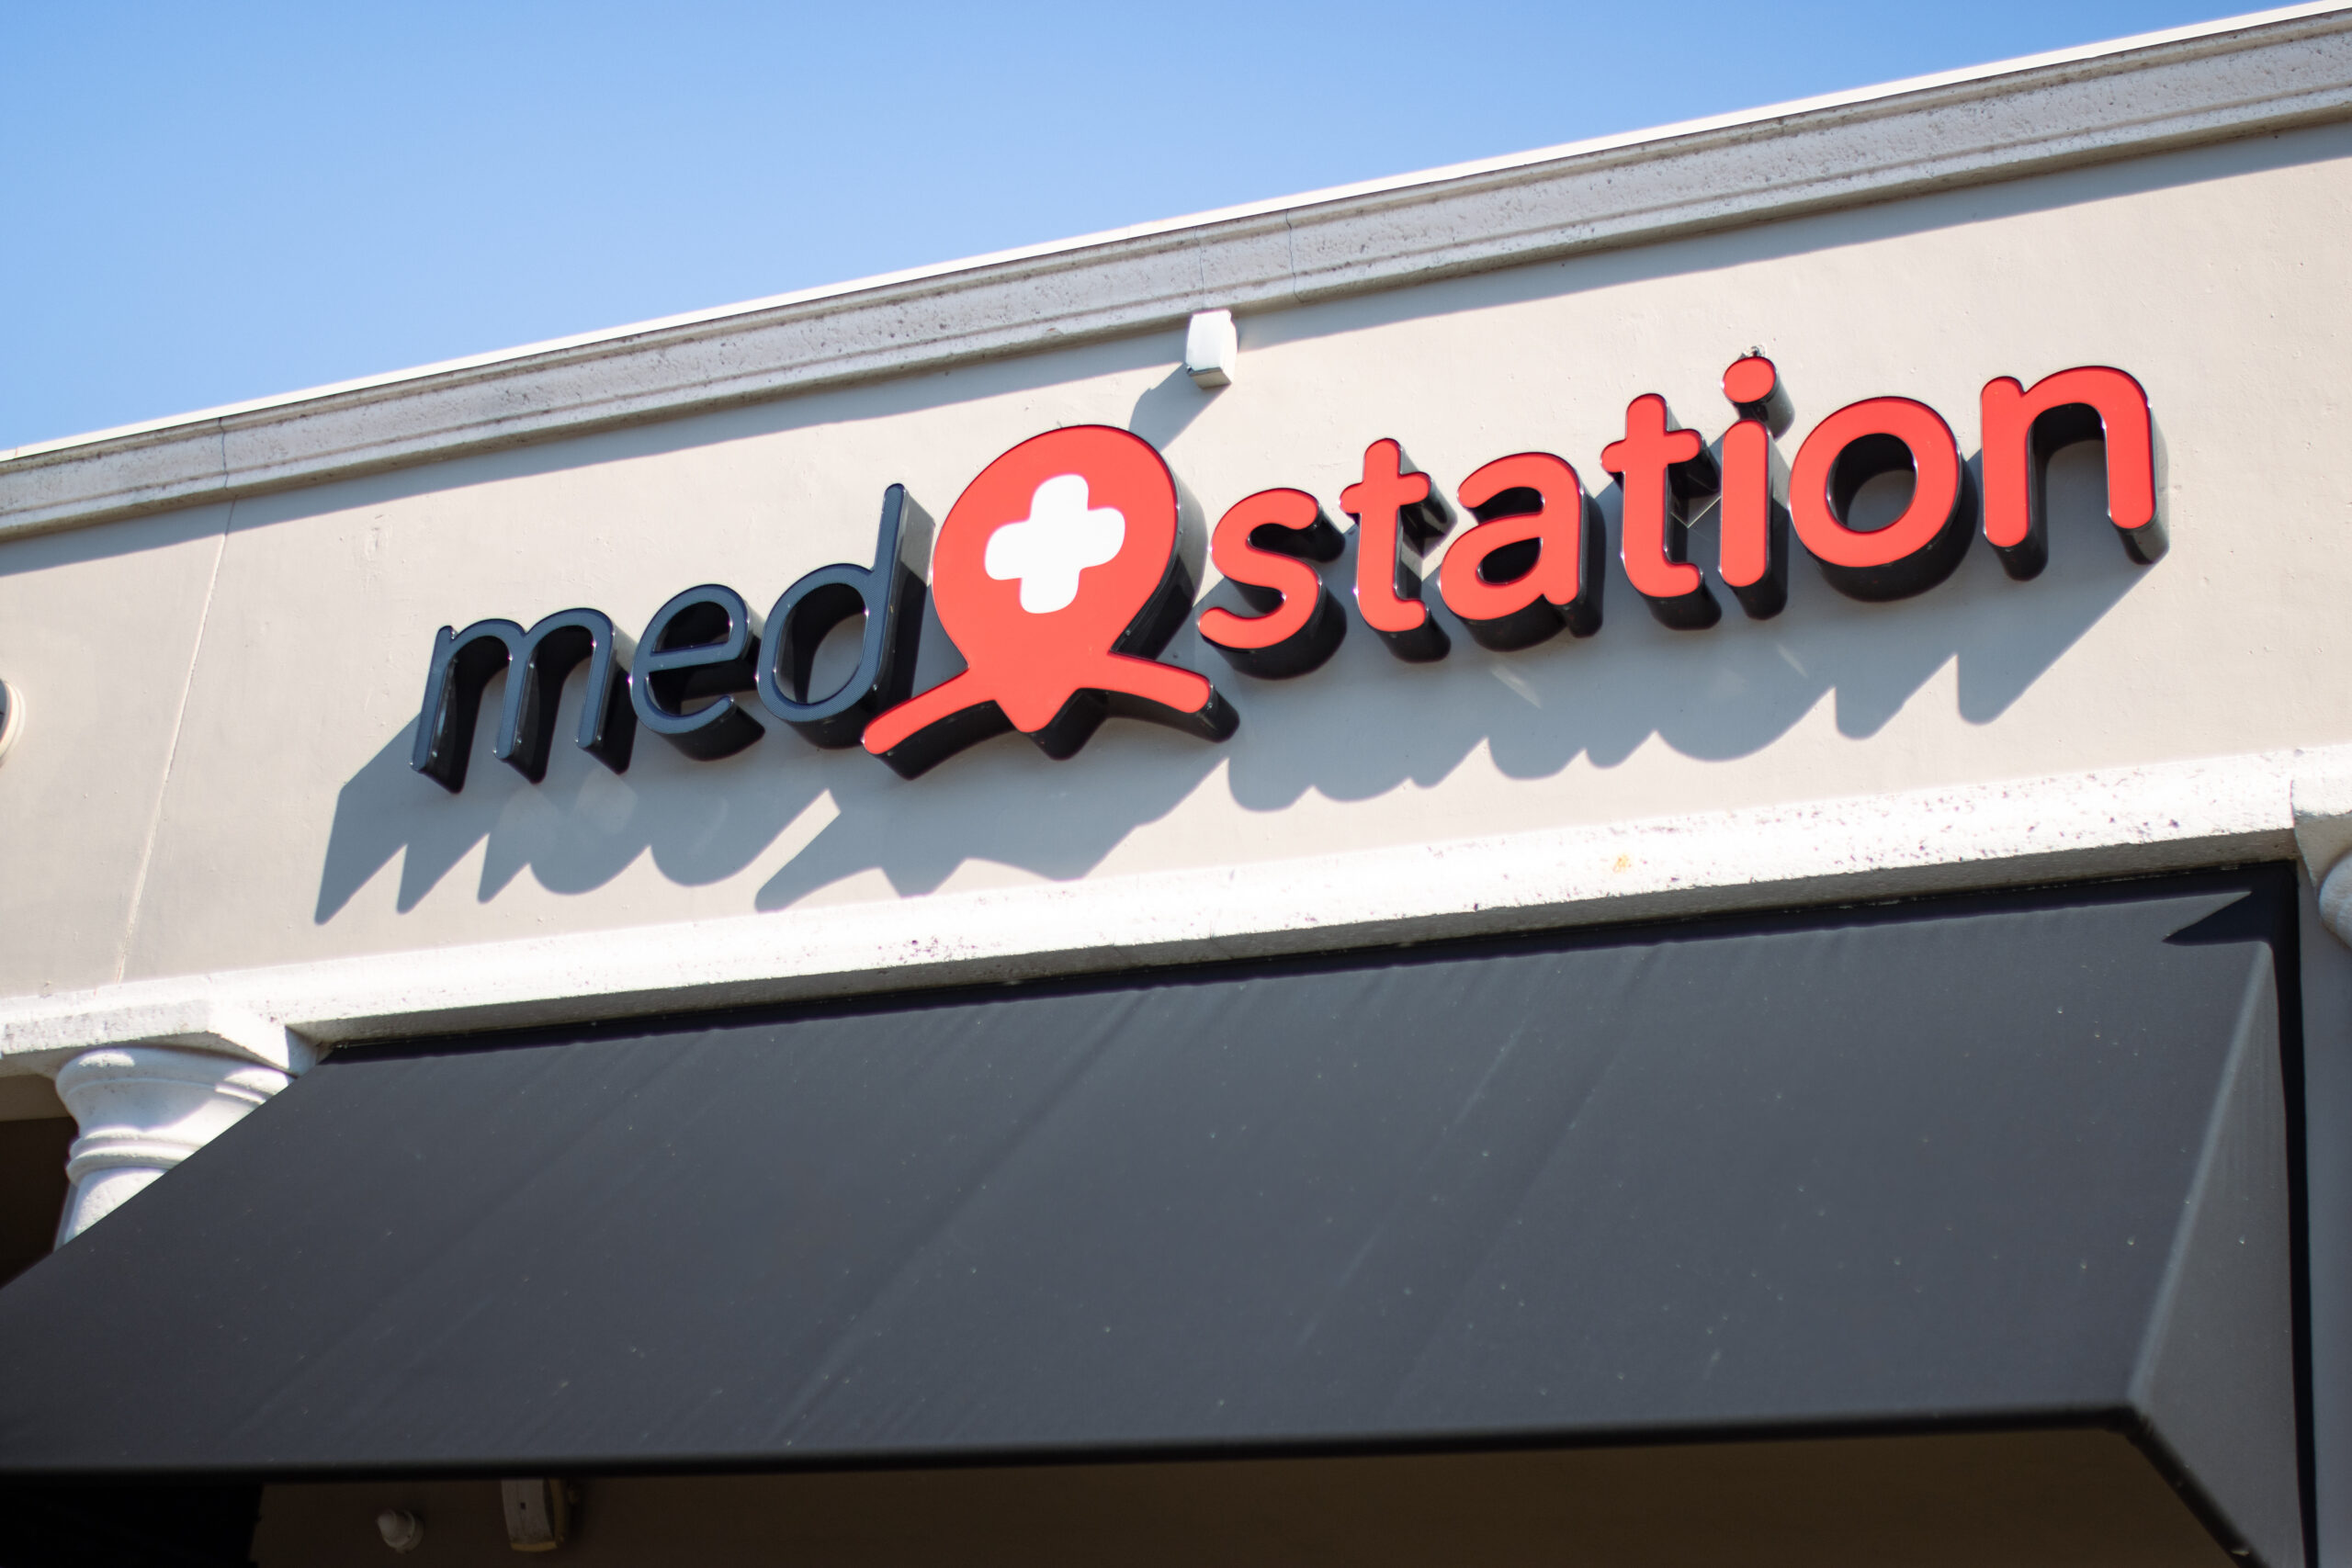 Medstation – A iniciativa que nasceu de uma real necessidade